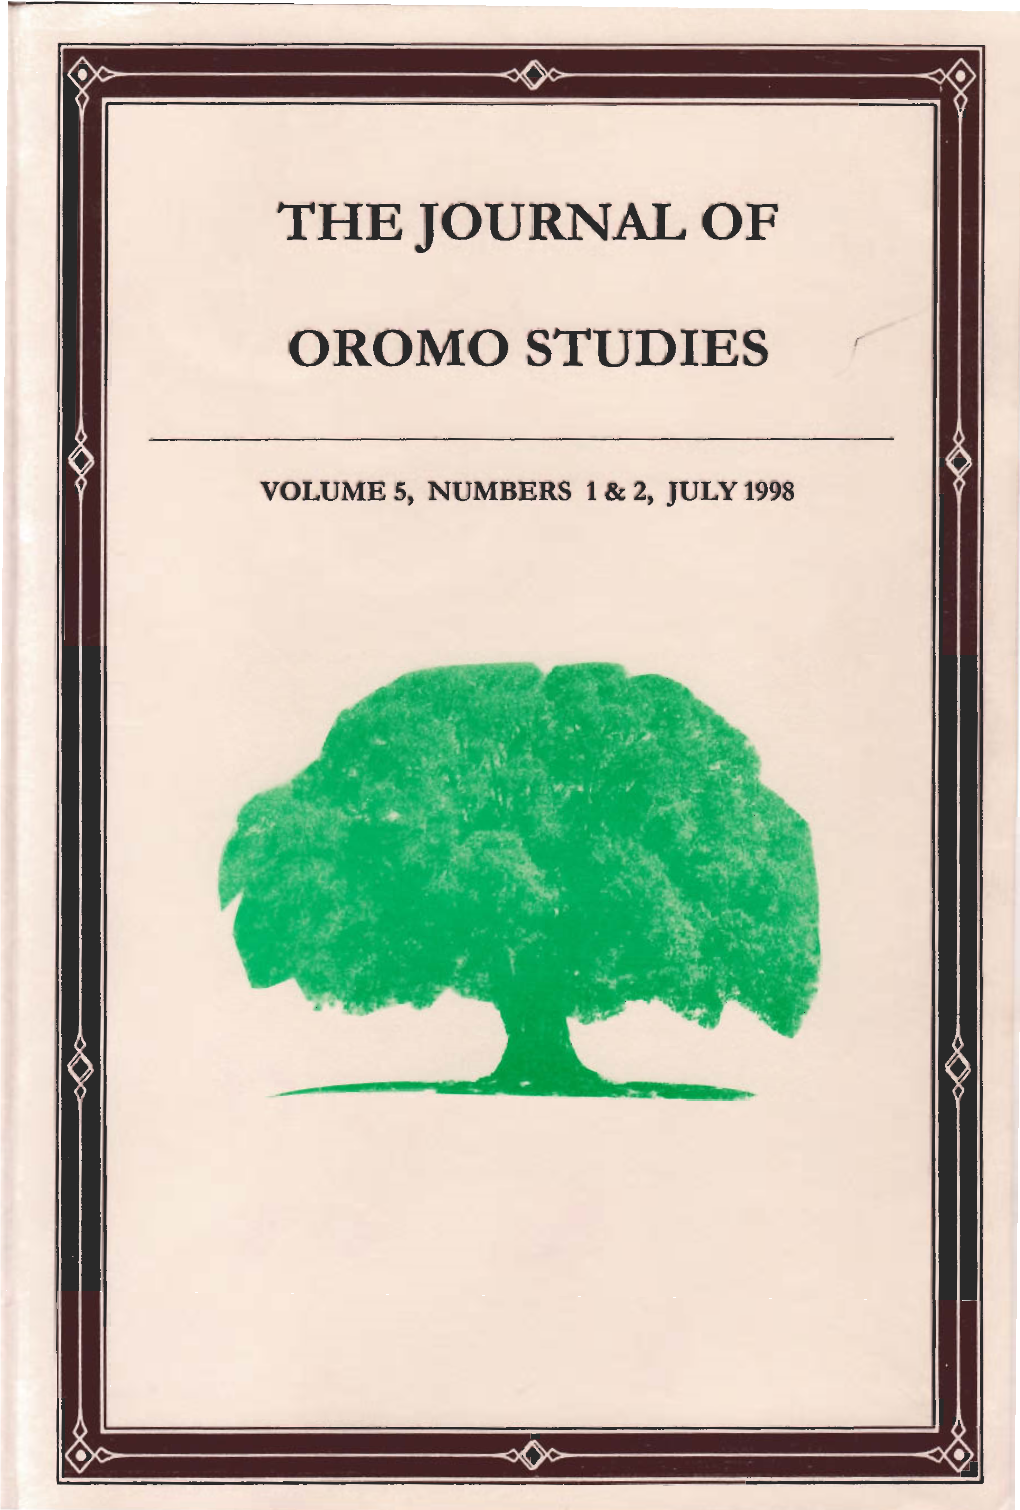 The Journal of Oromo Studies